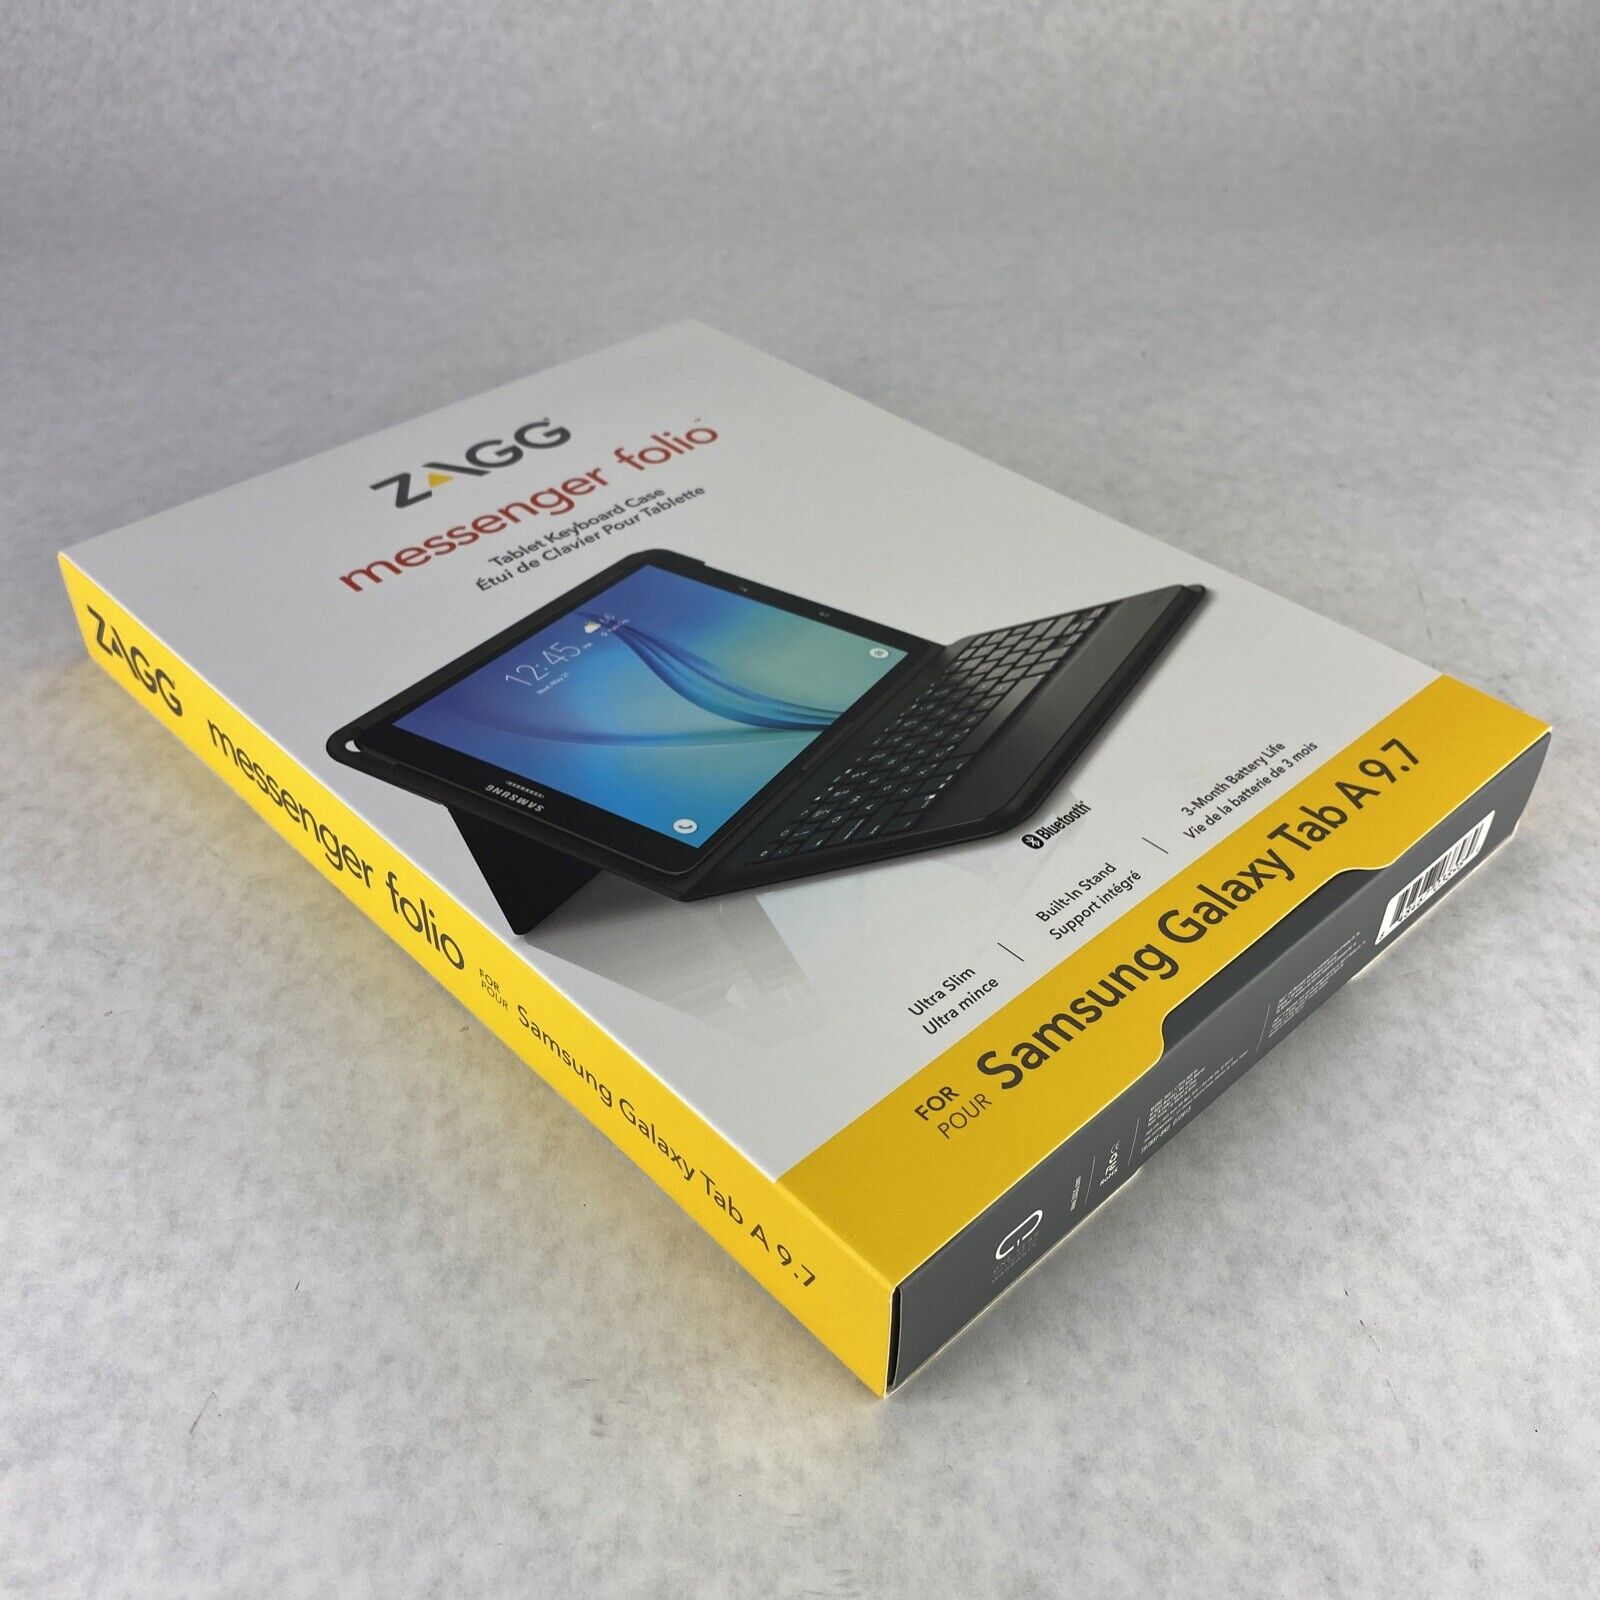 ZAGG Messenger Folio Case and Bluetooth Keyboard for Samsung Galaxy Tab A 9.7